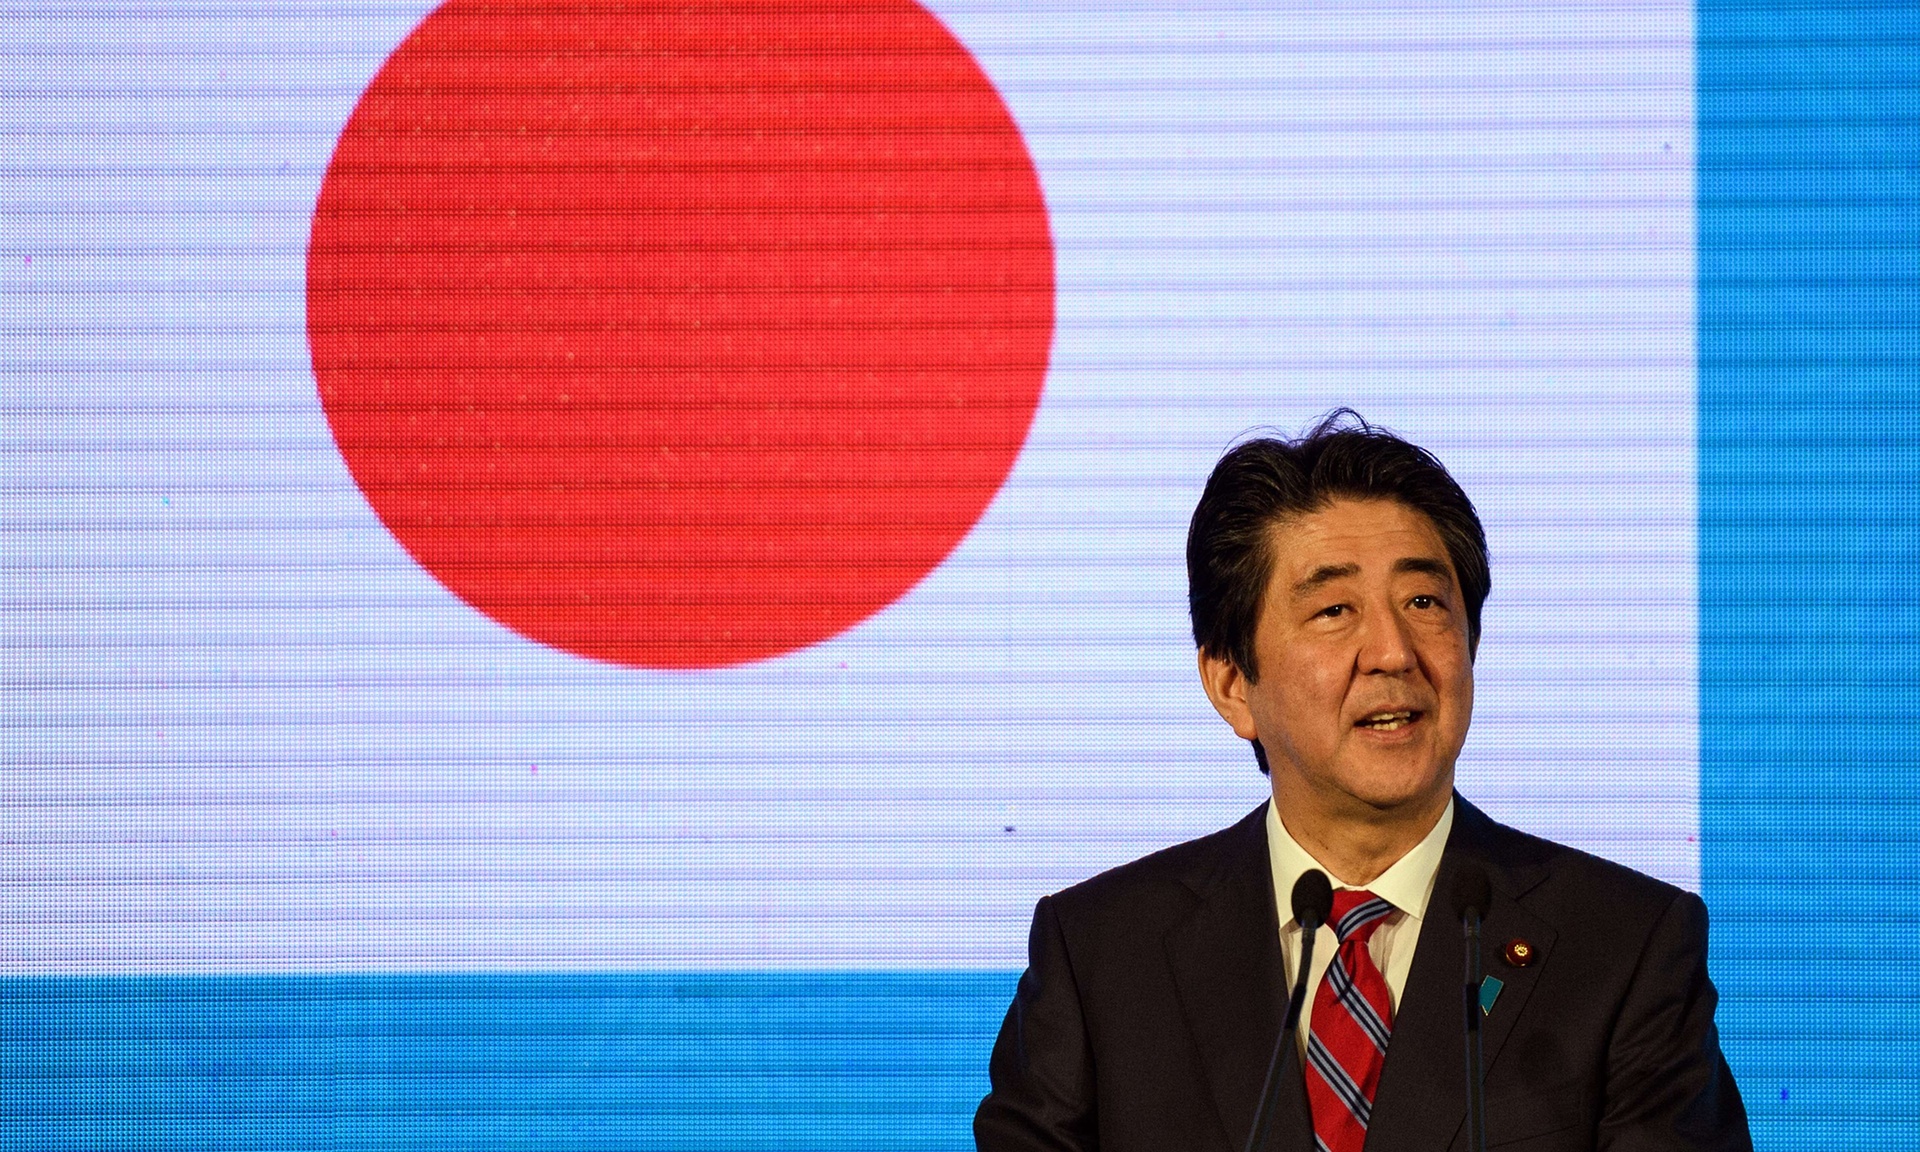  Thủ tướng Nhật Bản Shinzo Abe nói loạt tấn công khủng bố ở Paris là sự thách thức đối với những giá trị mà Nhật và Úc cùng chia sẻ - Ảnh: AFP